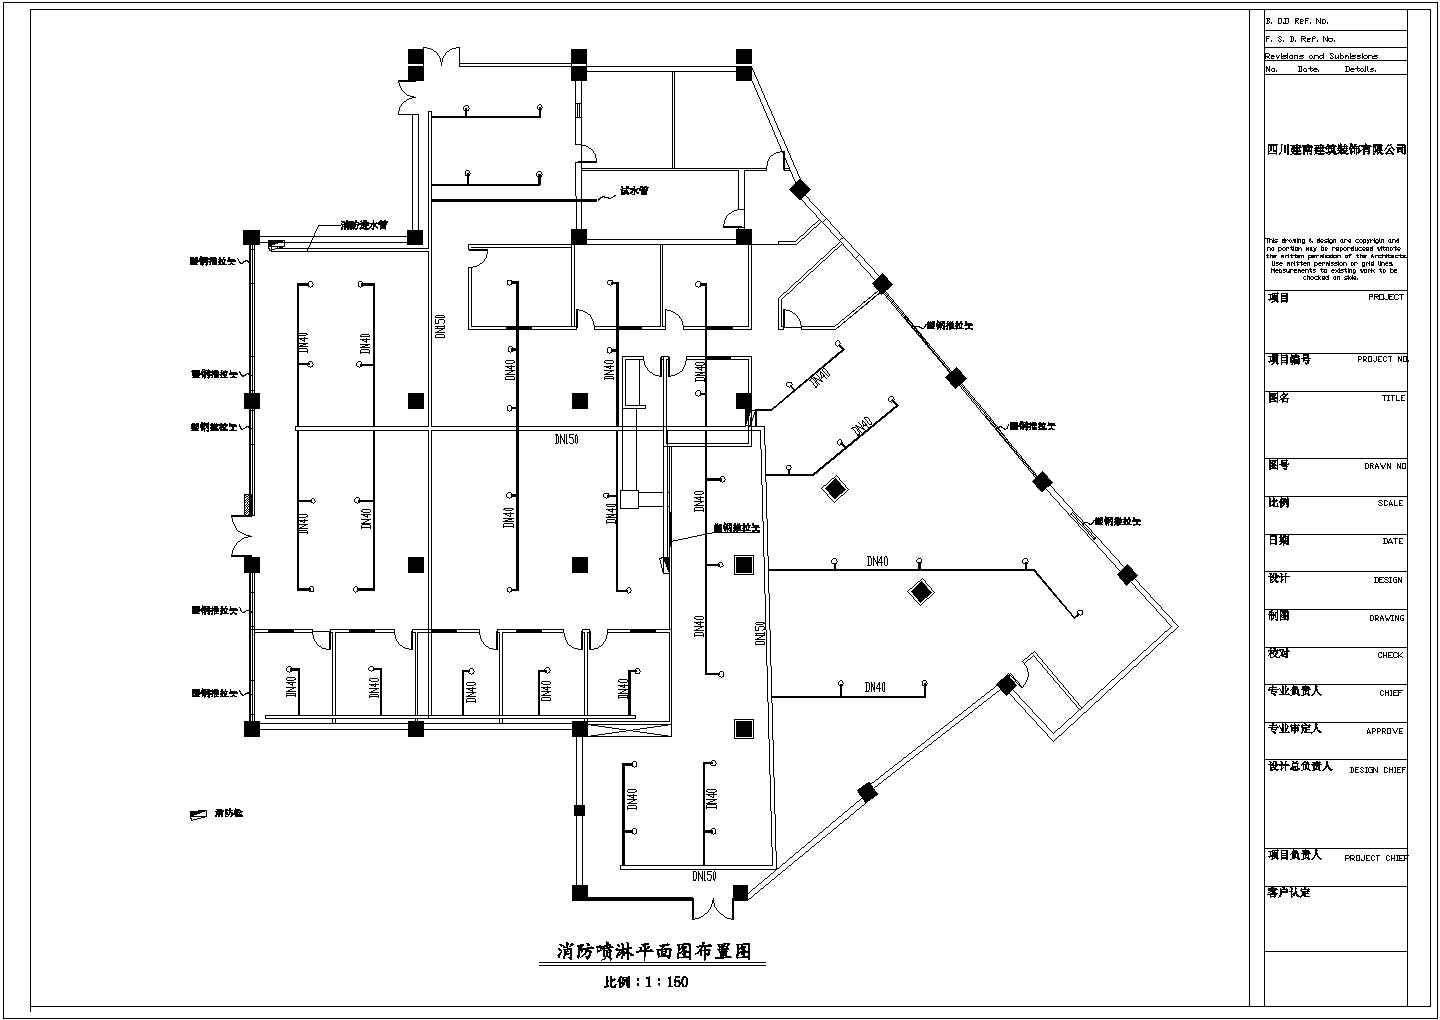 【江苏省】常州市网吧加茶楼设计图纸